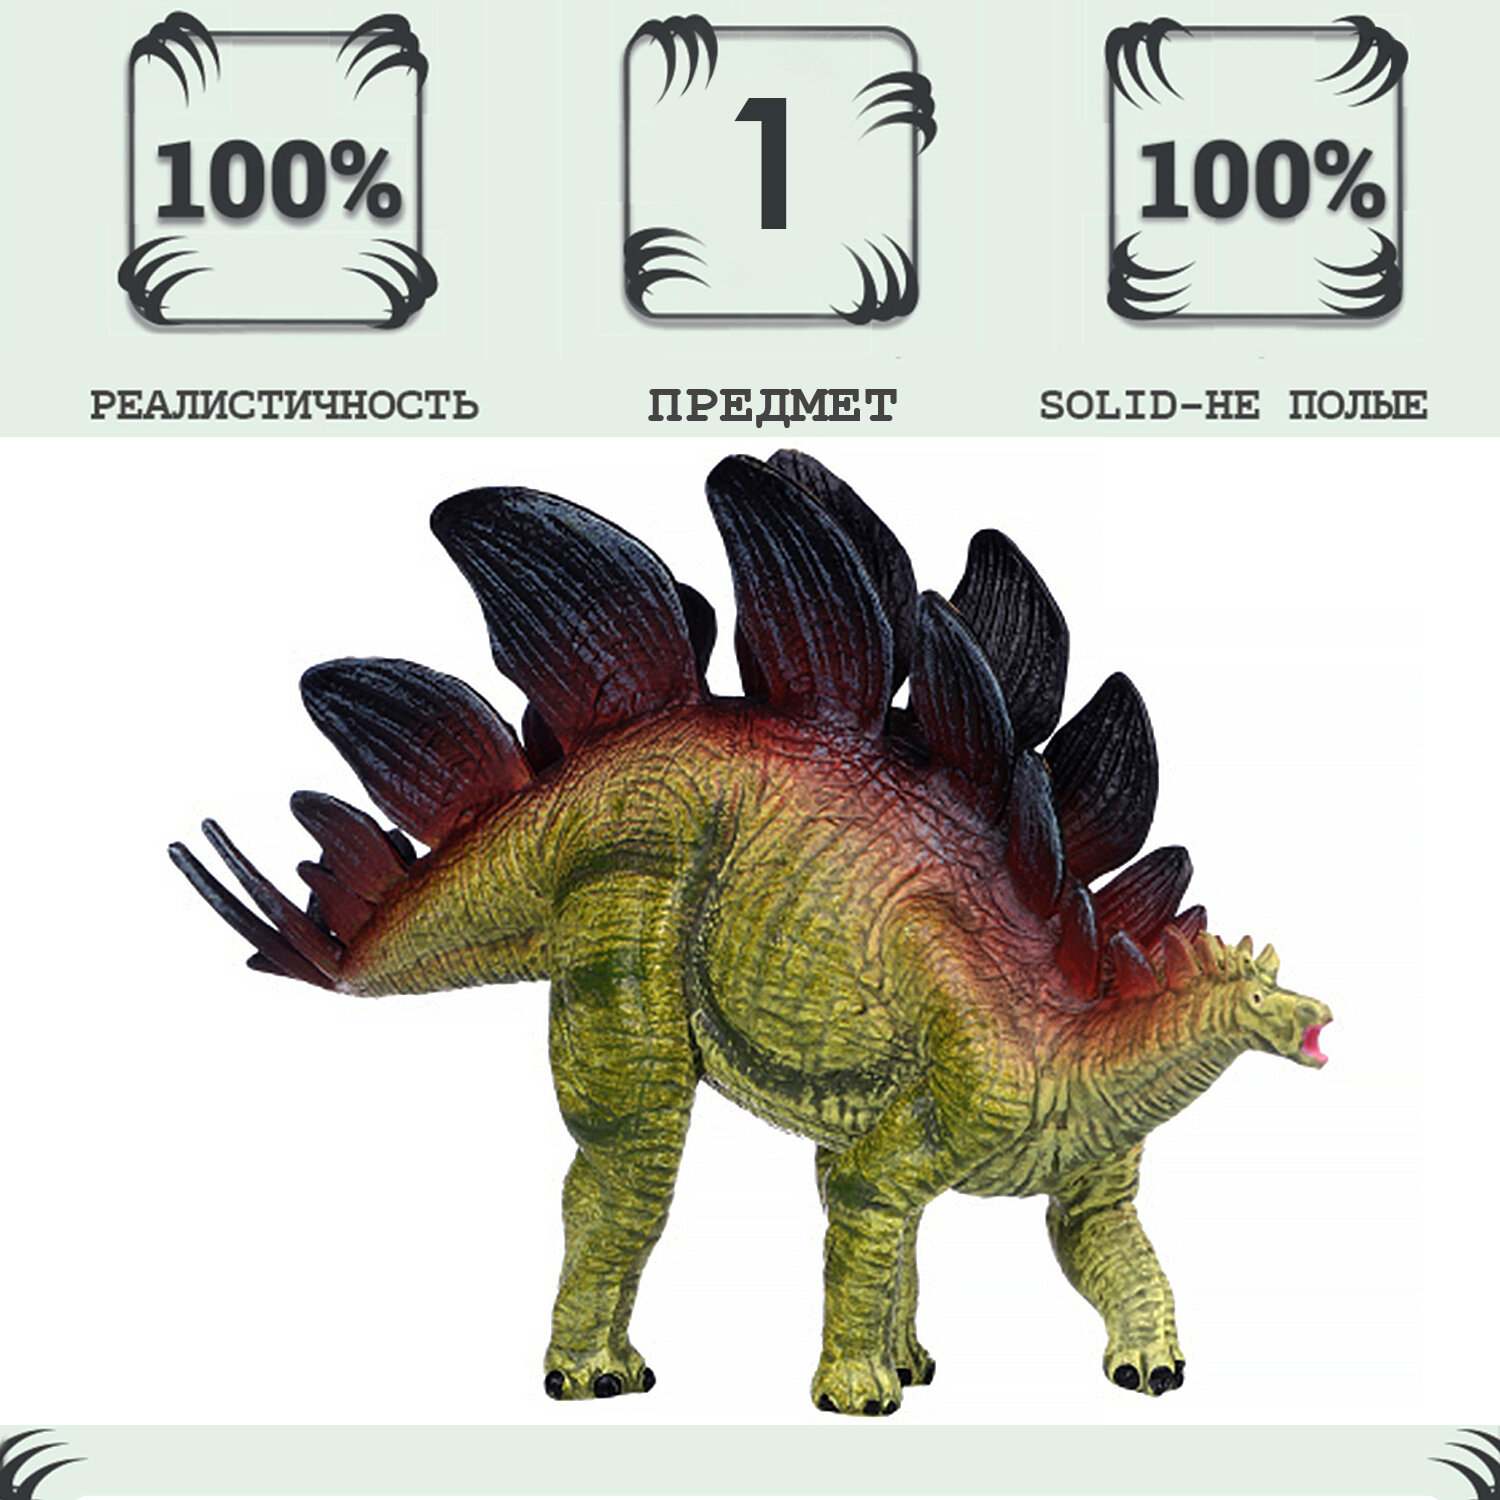 Игрушка динозавр серии "Мир динозавров" - Фигурка Стегозавр